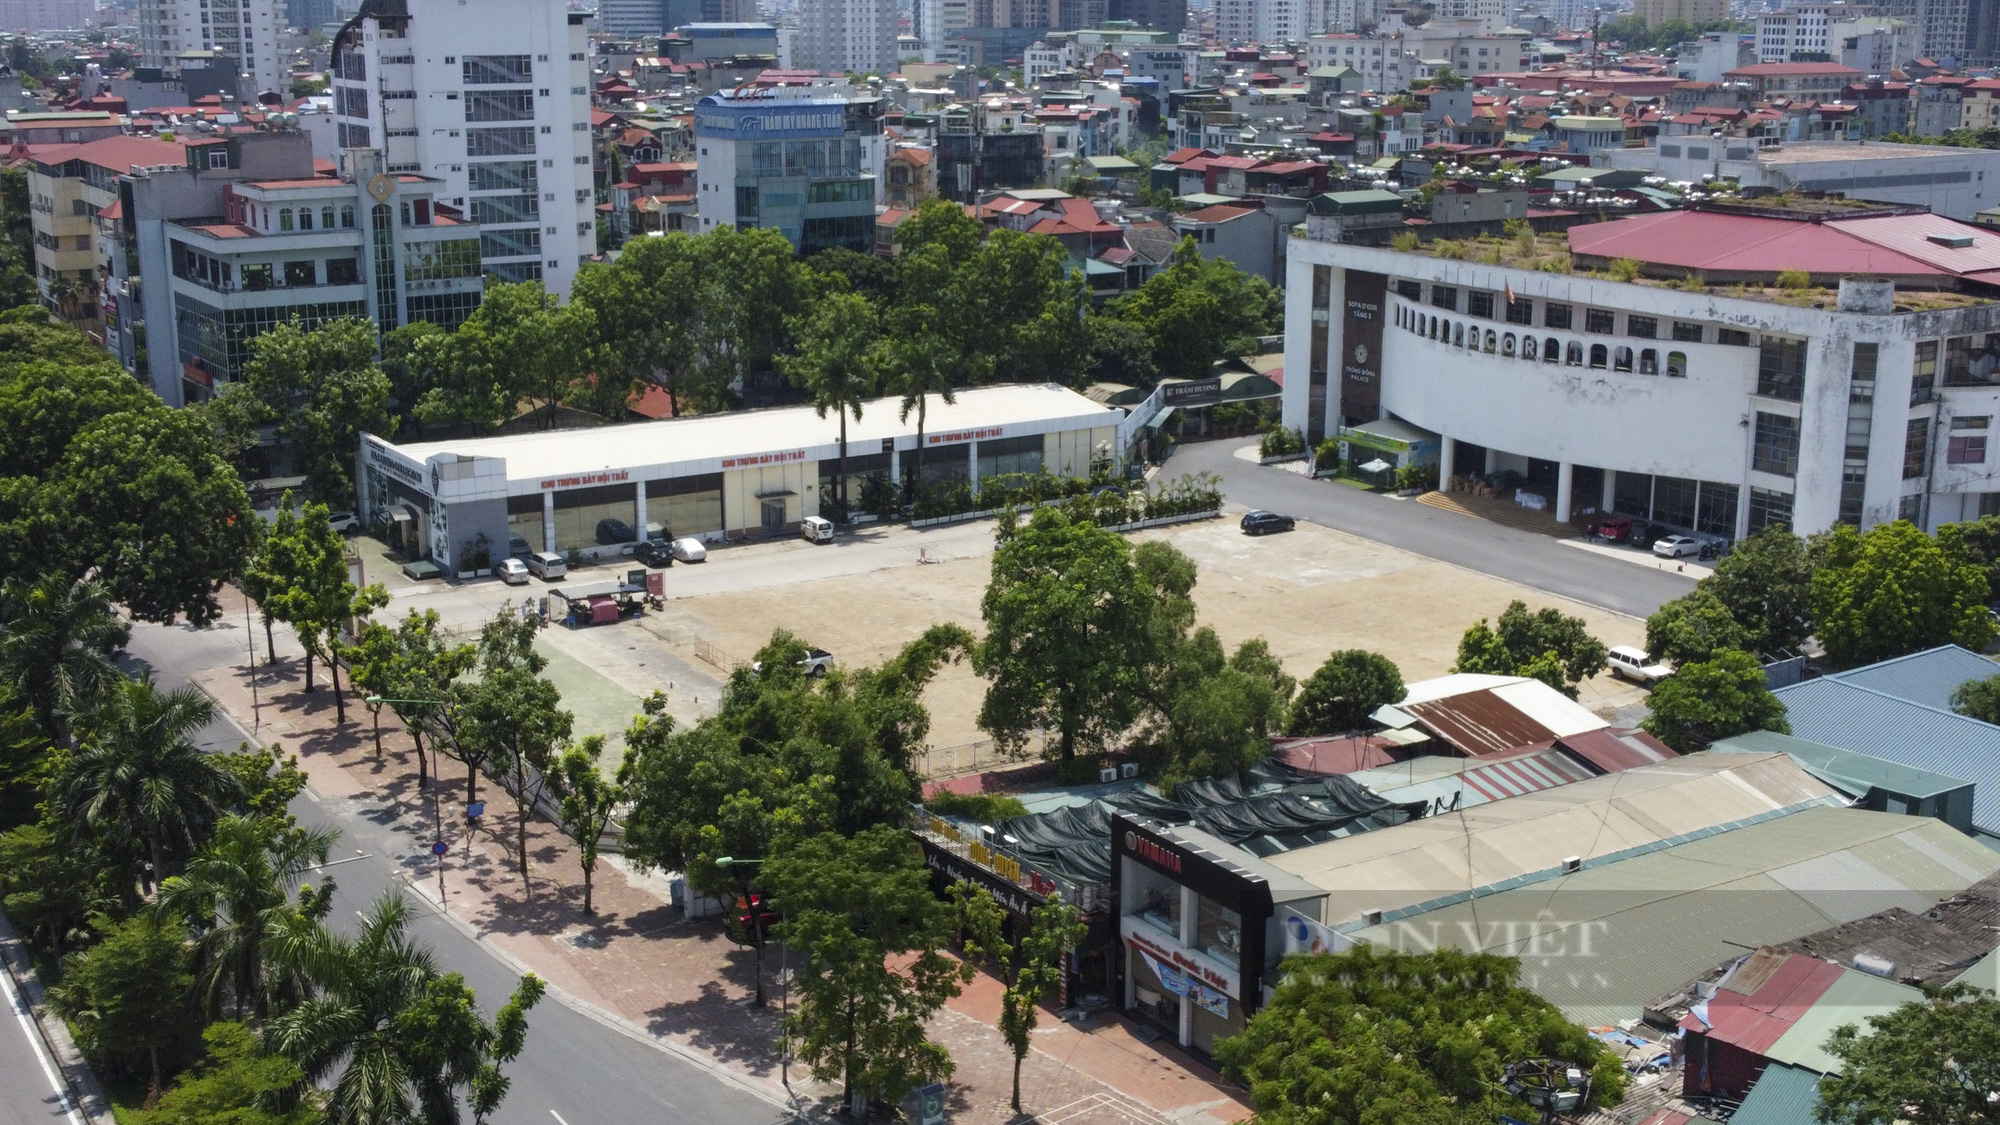 Hà Nội: Cận cảnh bến xe, sân vận động được đề xuất để tập kết hàng hoá - Ảnh 3.